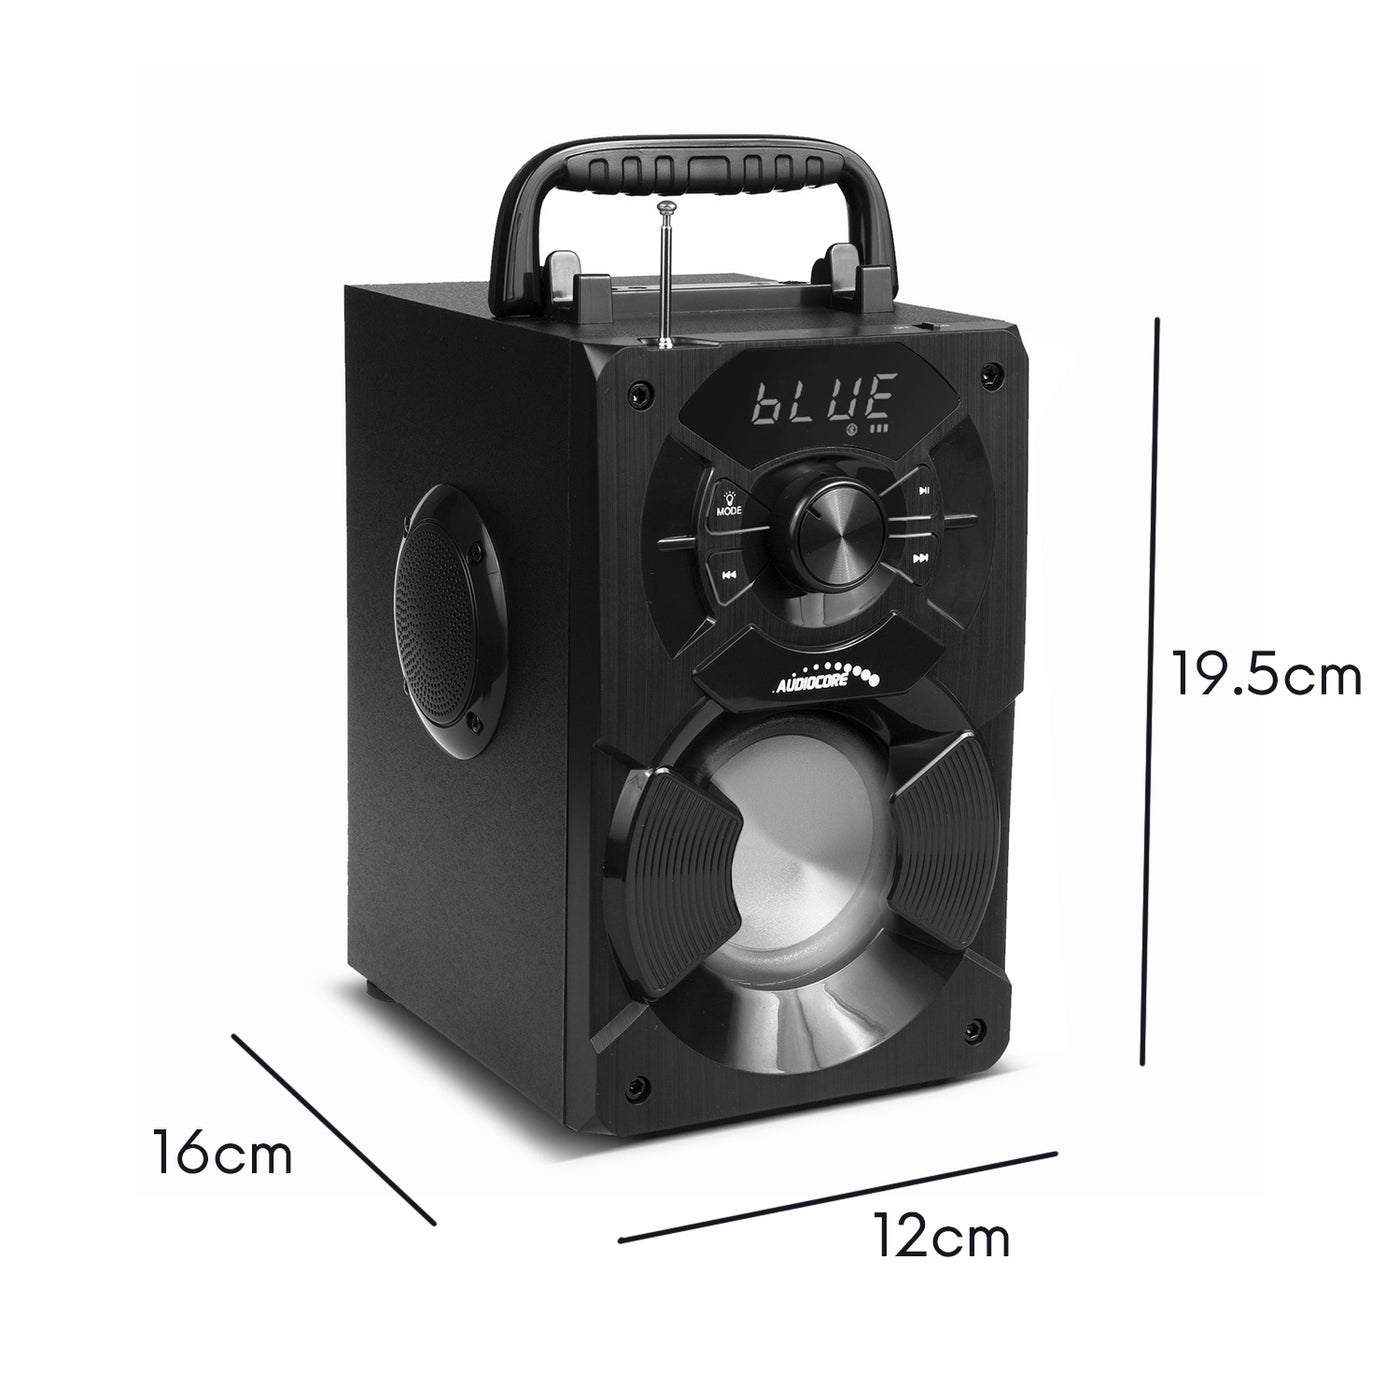 Przenośny głośnik bluetooth / radio / SD / MMC / aux-in / USB / oświetlenie / pilot / antena teleskopowa / złącze mikrofonu